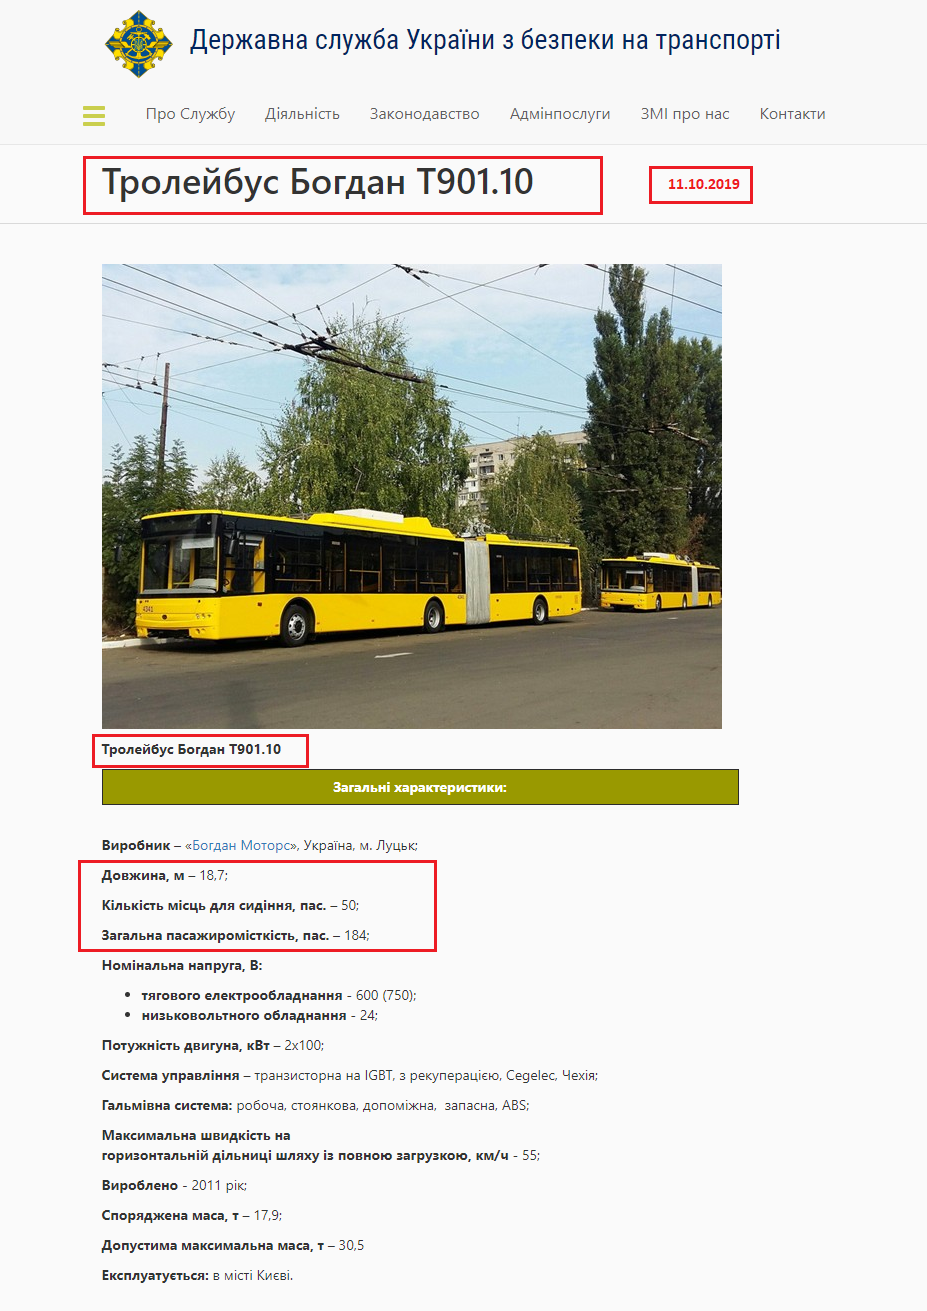 http://dsbt.gov.ua/storinka/troleybus-bogdan-t90110